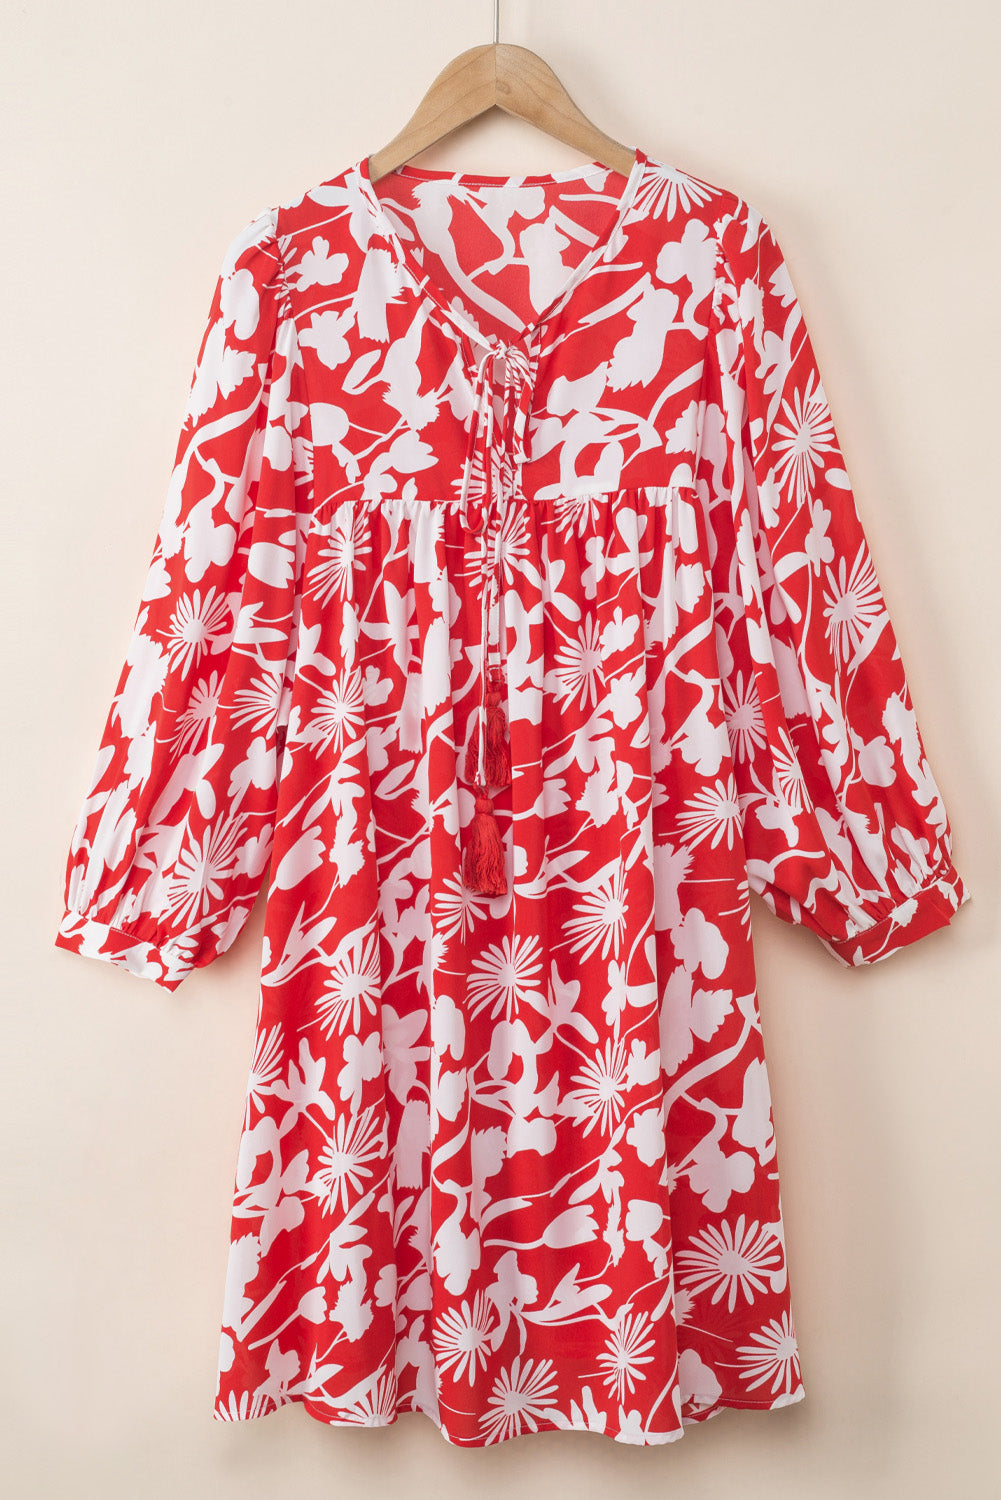 Mini-robe babydoll à imprimé floral rouge vif, manches bouffantes, col fendu